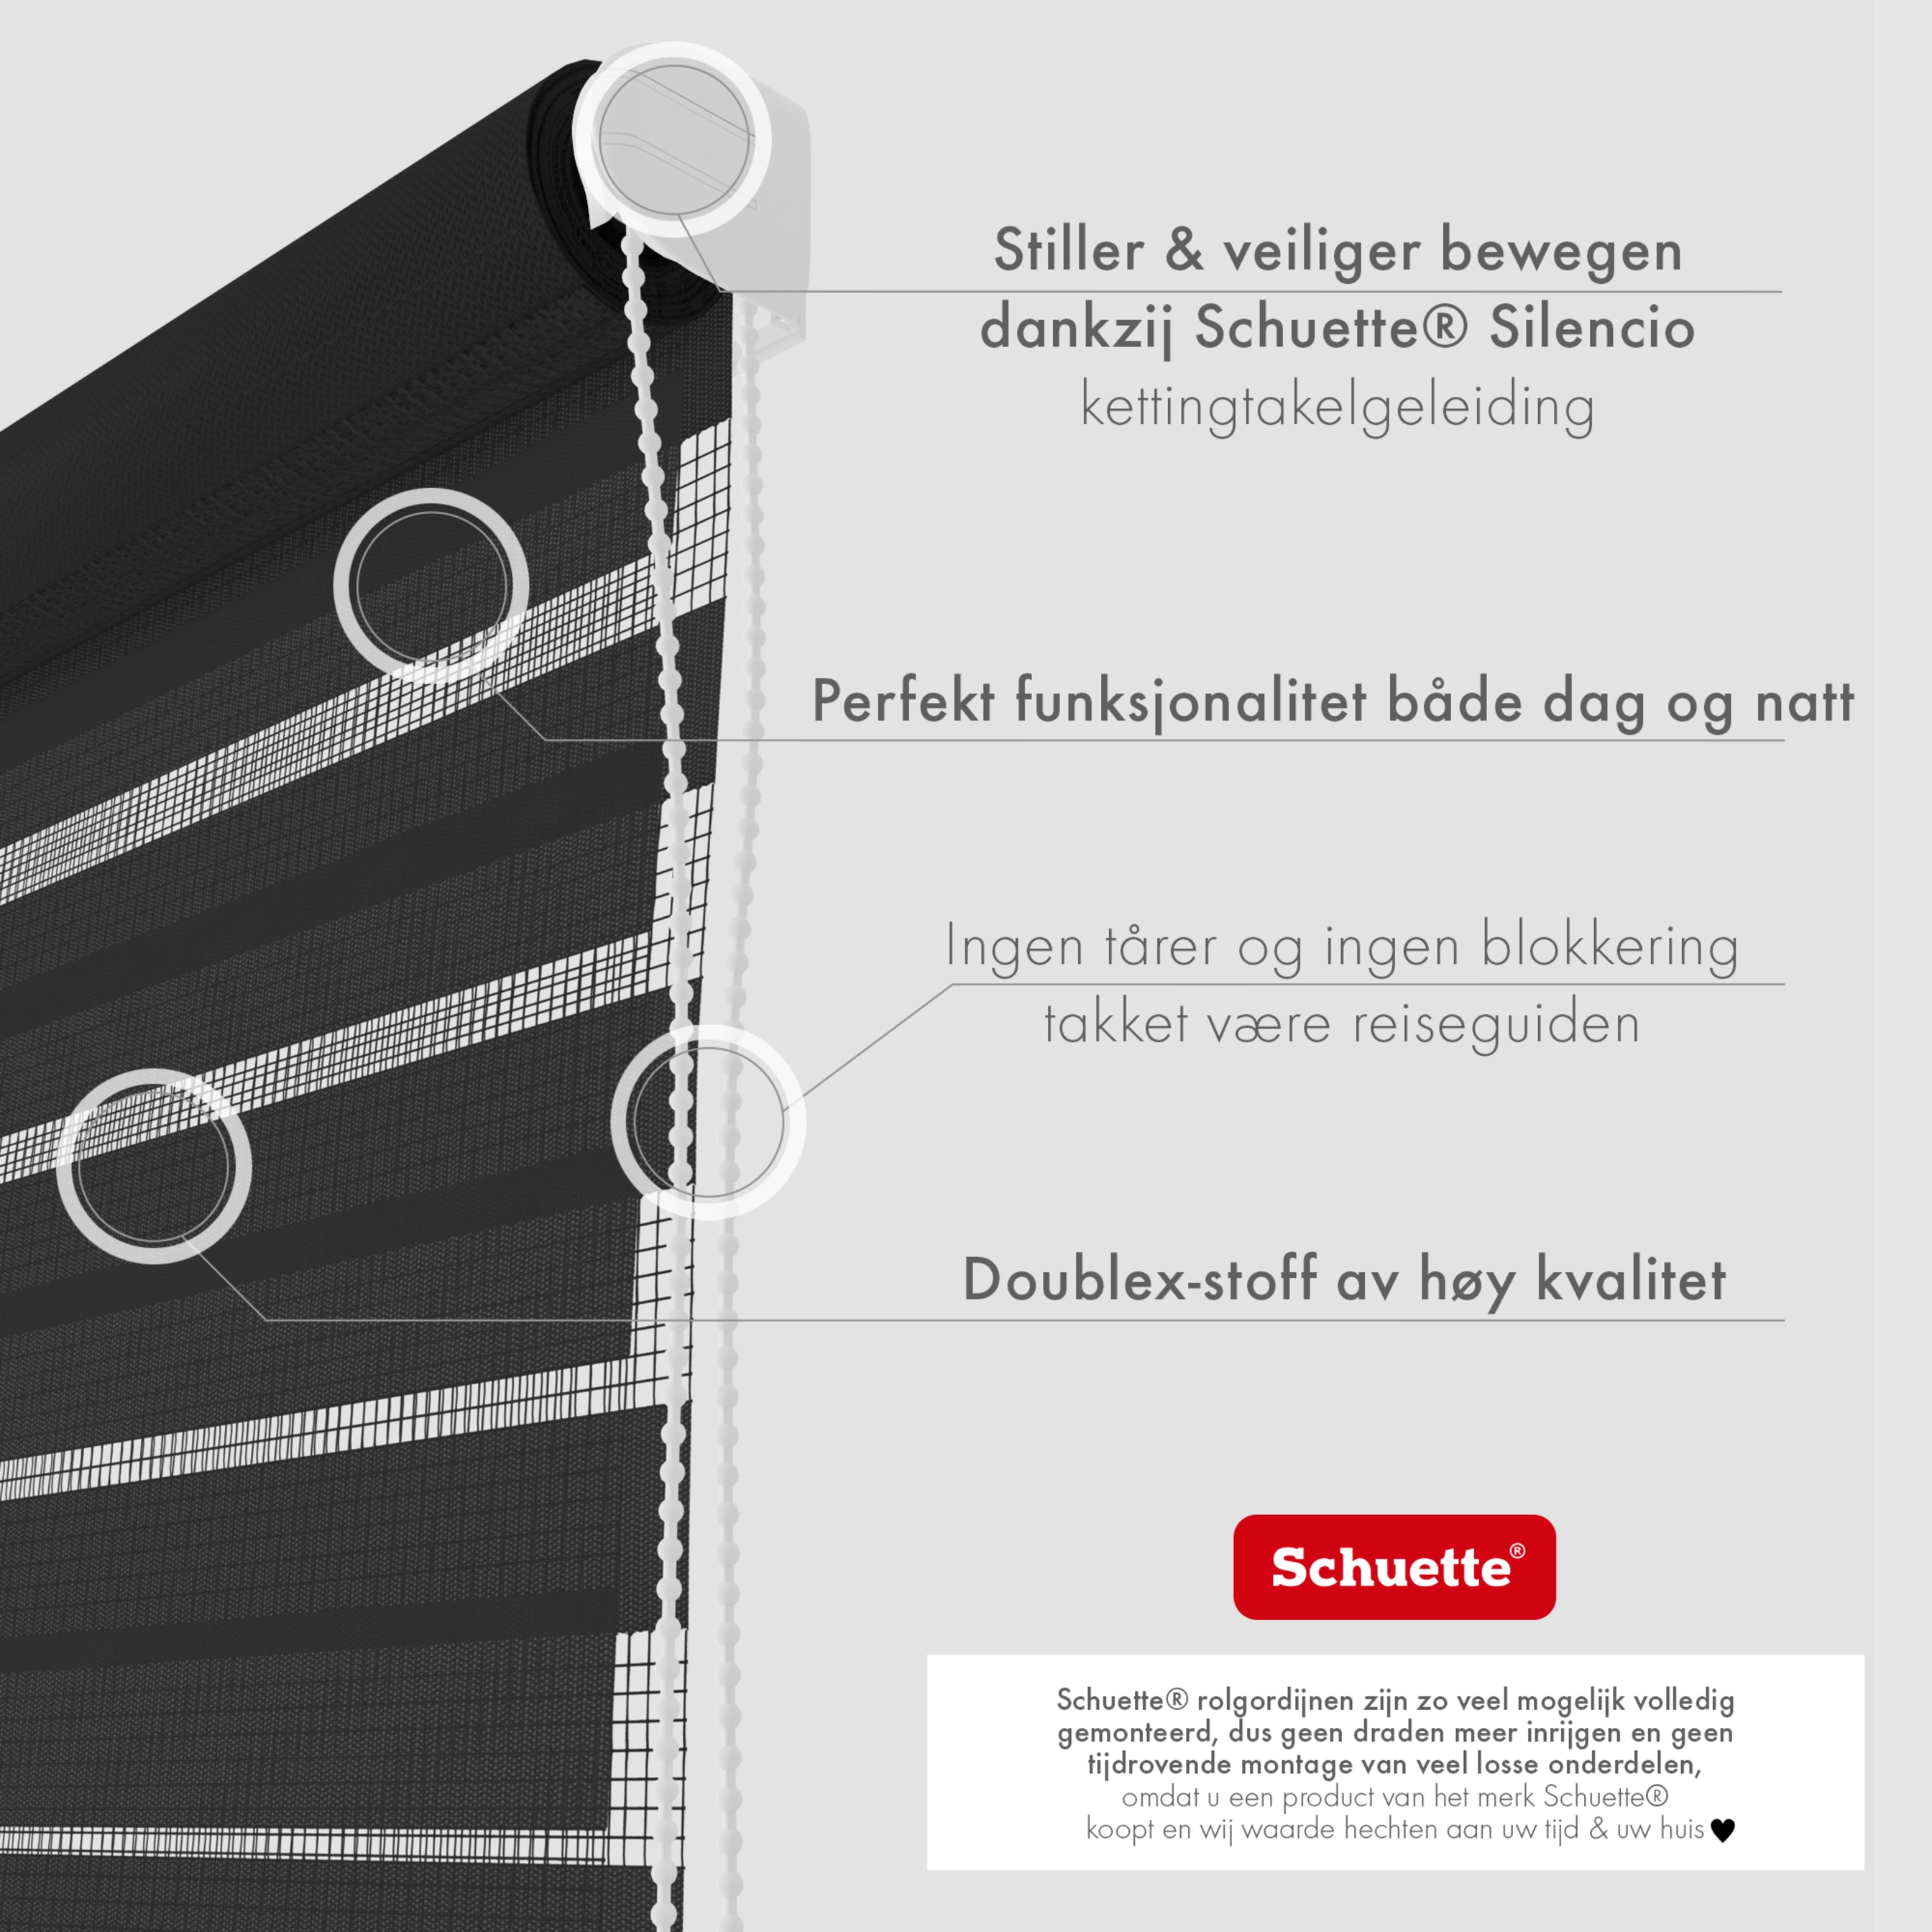 Schuette® Rollo ohne Bohren & mit Bohren 2in1 • Nacht Doppelrollo Kollektion: Black Flag (Schwarz) • Profilfarbe: Weiß